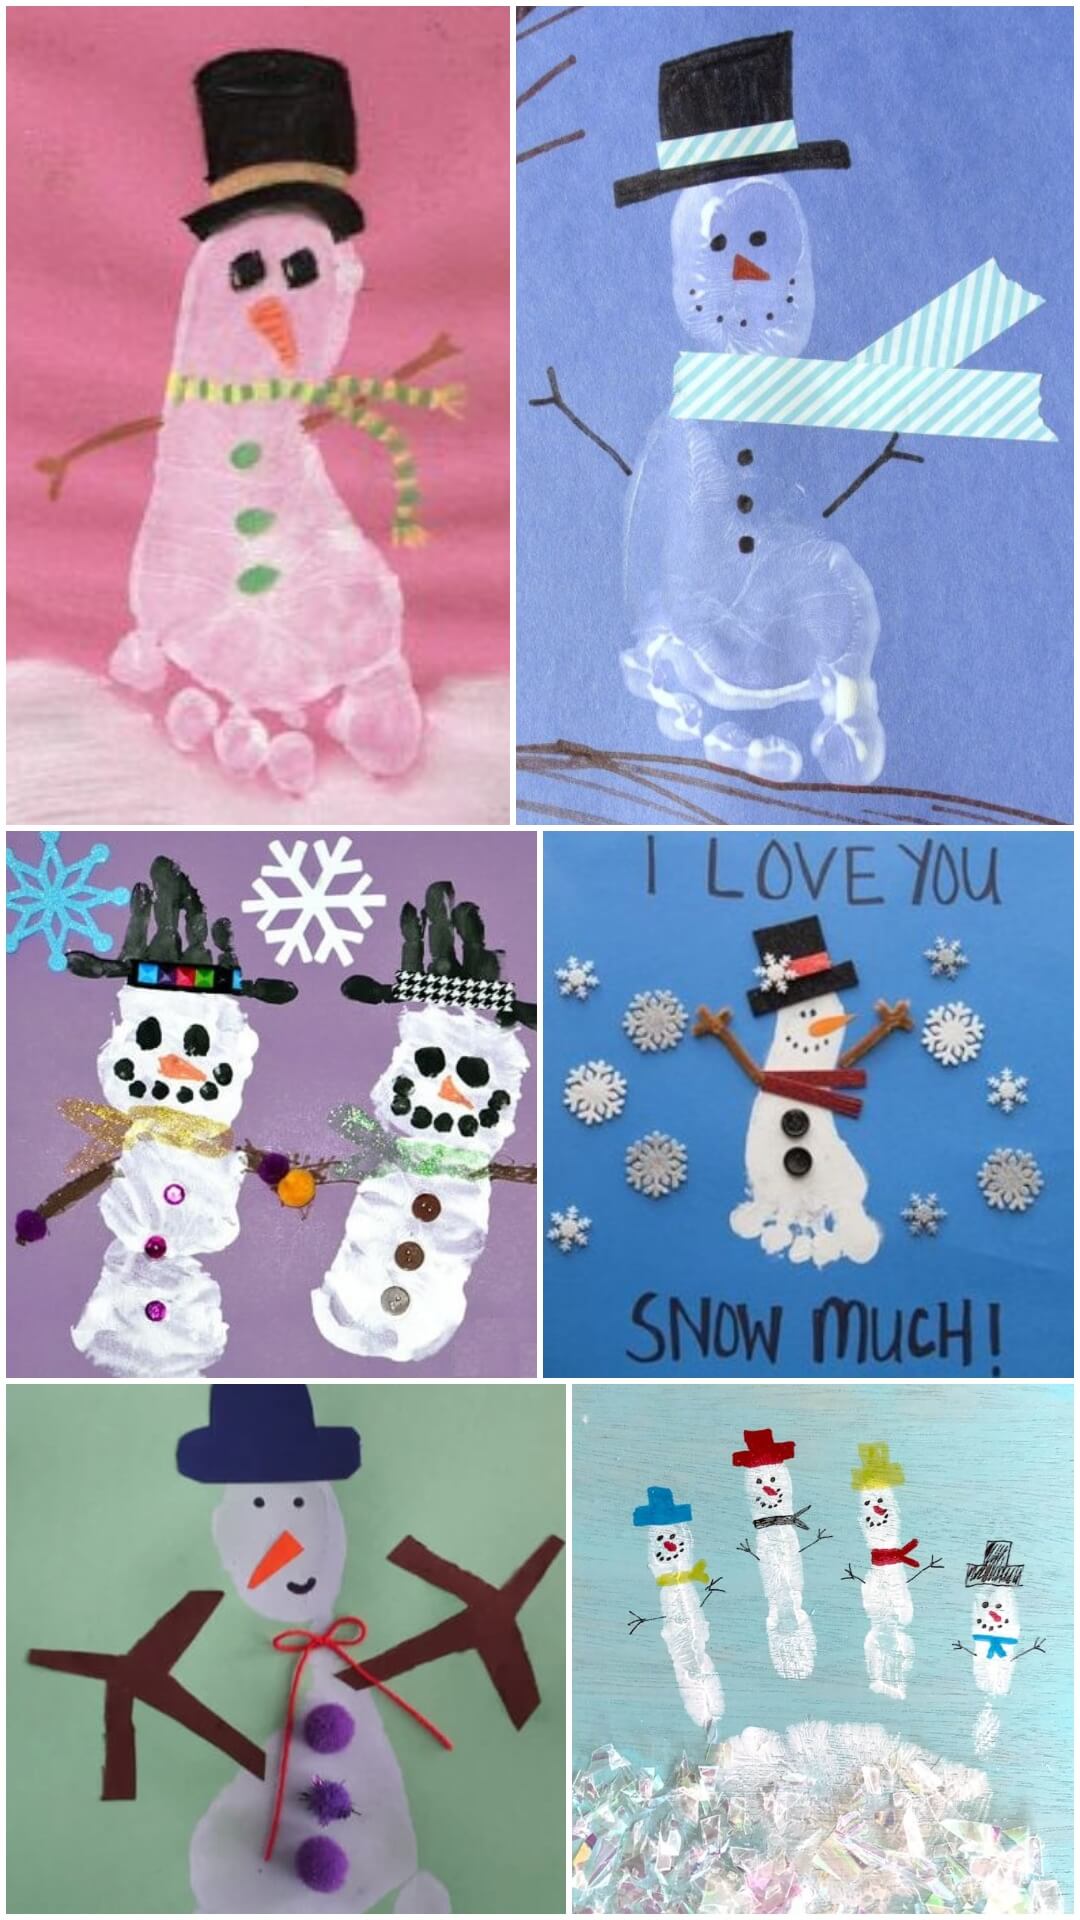 Footprint & Handprint Snowman Craft For Christmas